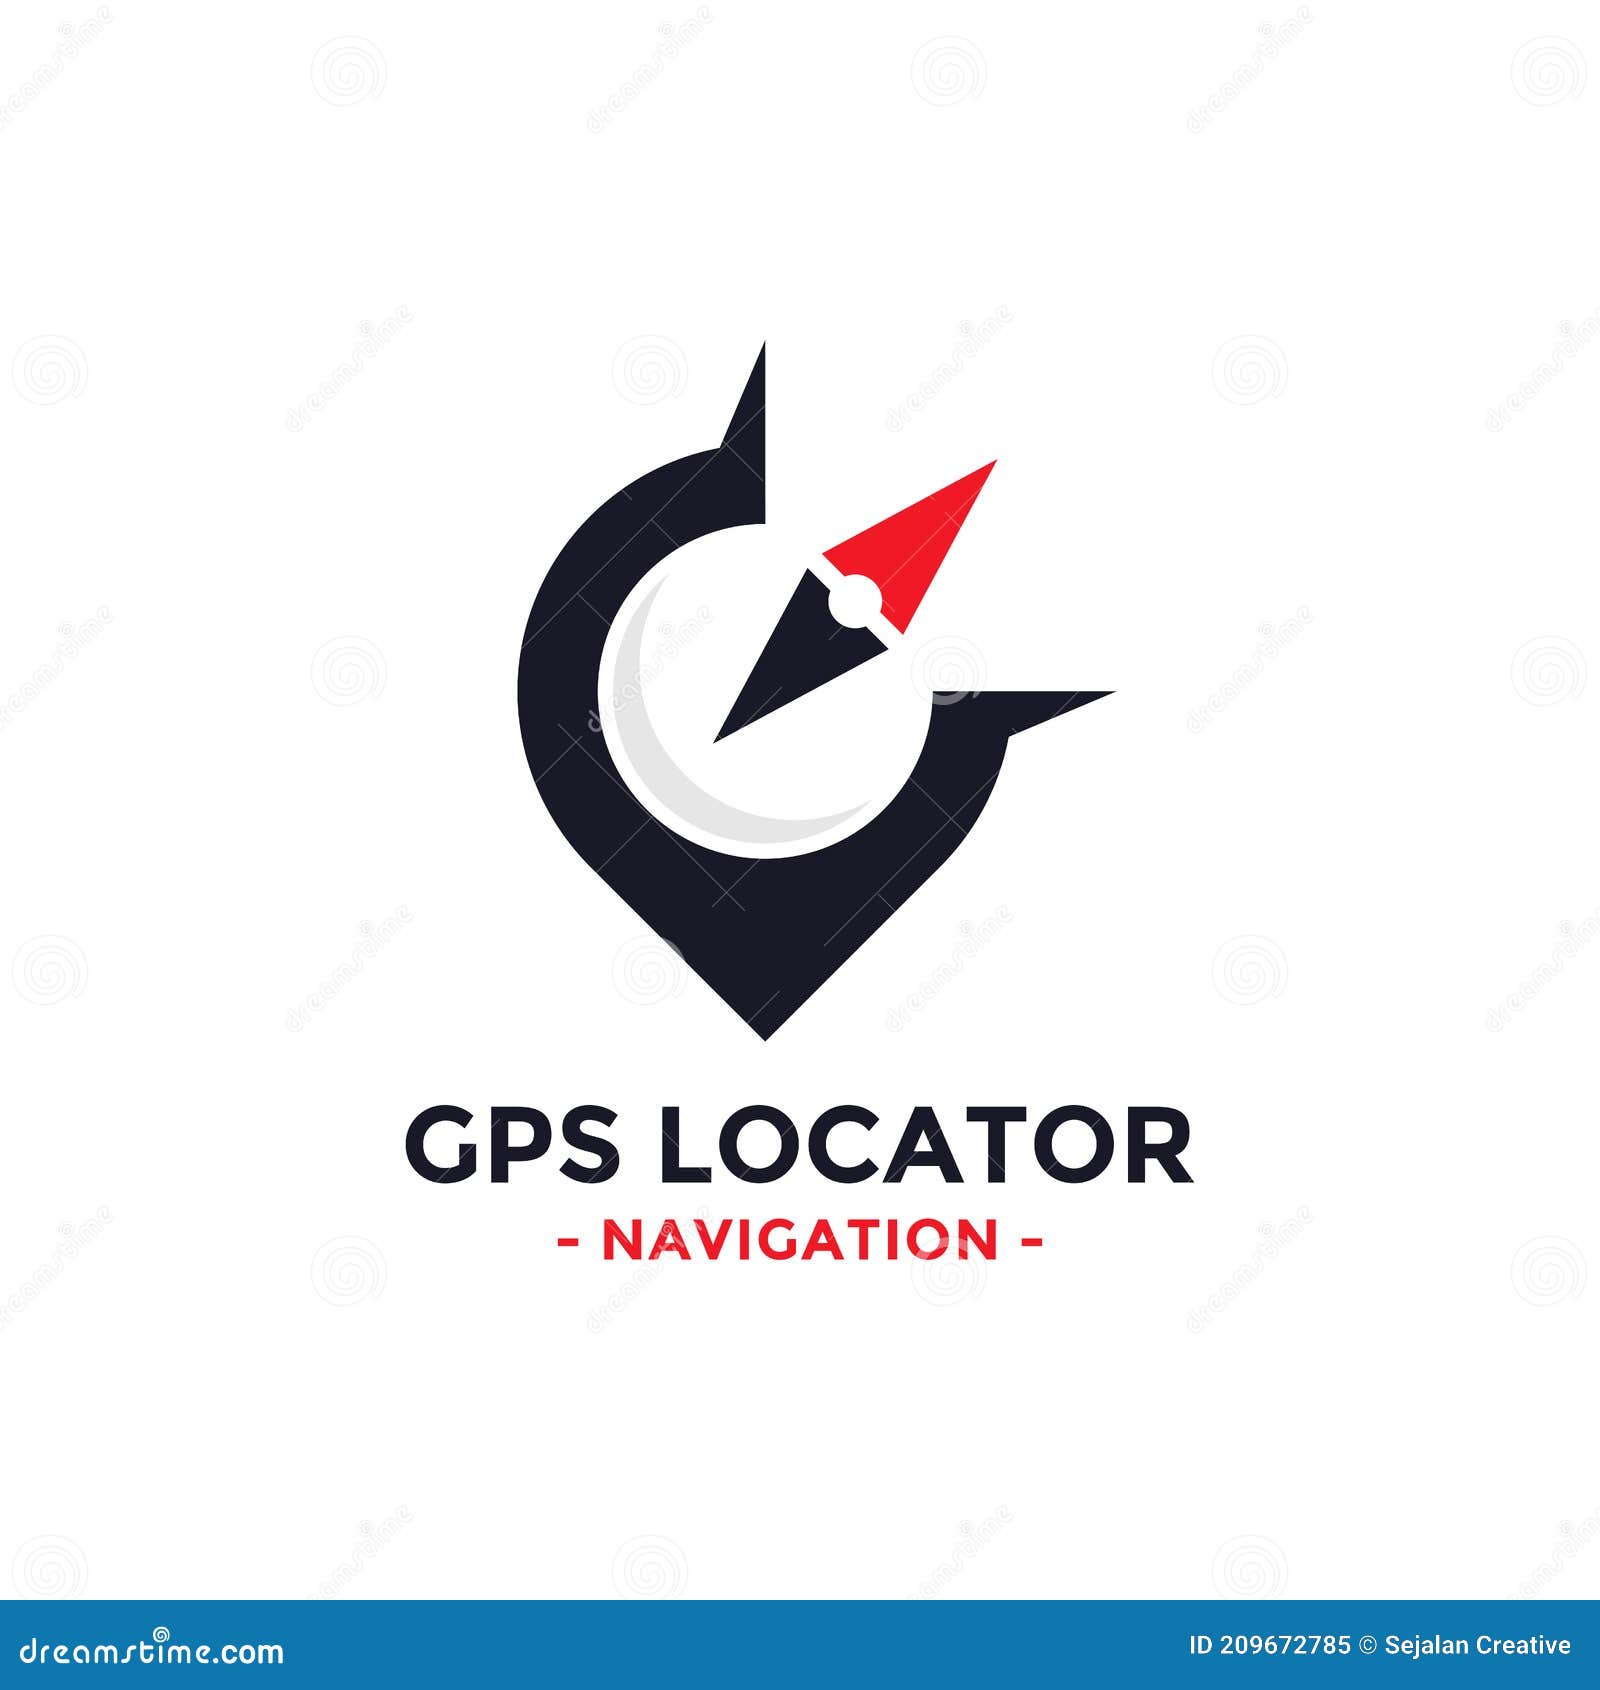 Gaia GPS Logo Vector - (.SVG + .PNG) - LogoVectorSeek.Com